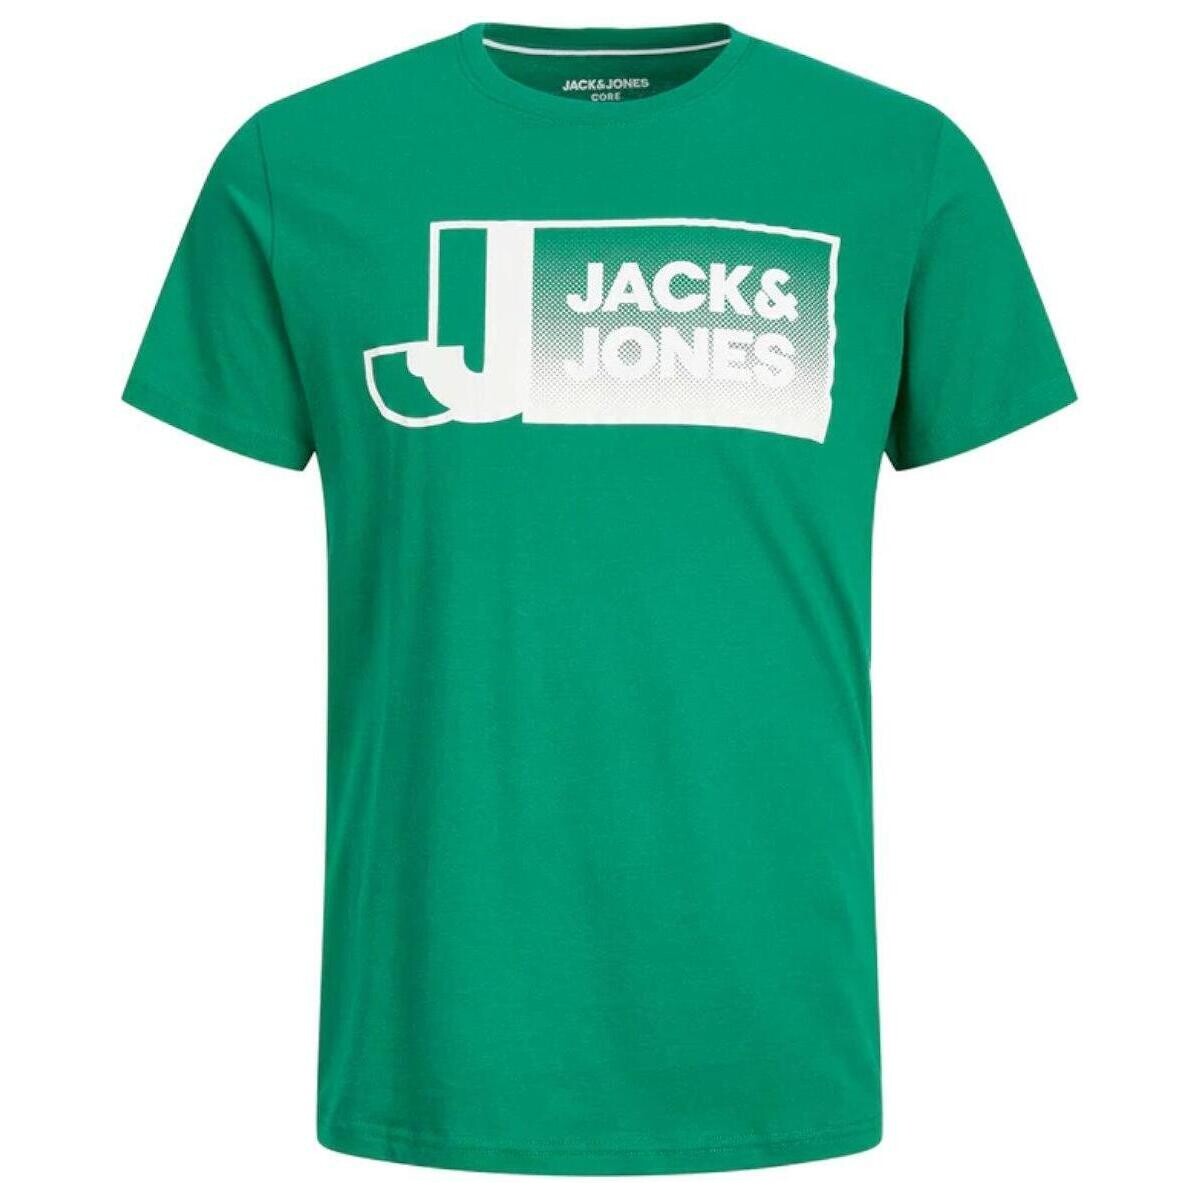 tekstylia Chłopiec T-shirty z krótkim rękawem Jack & Jones  Zielony